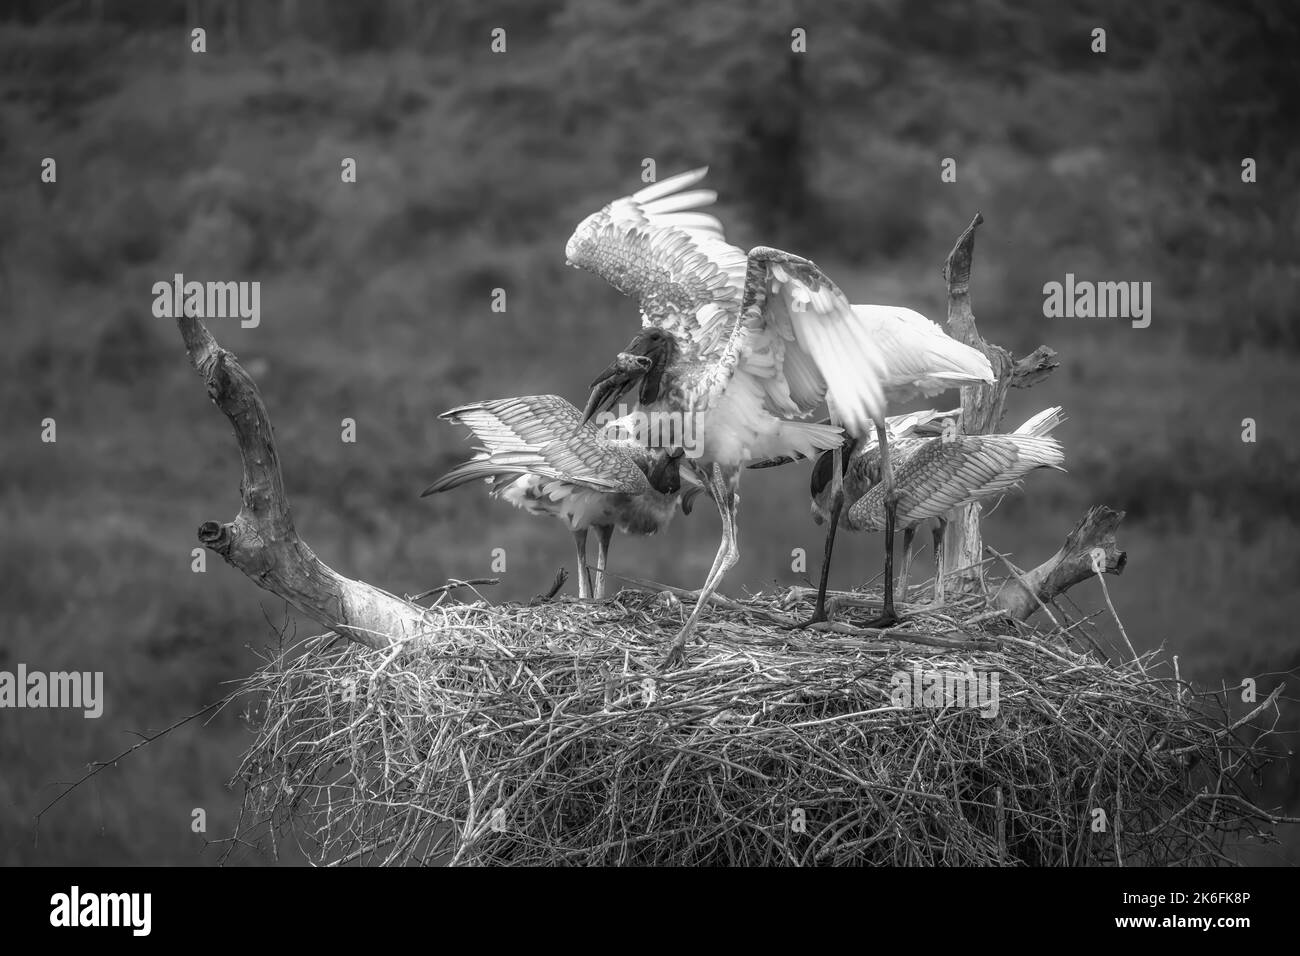 Schwarz-weißes Bild von Jabiru-Störchen auf einem Nest - Erwachsene und junge - Fütterung Stockfoto